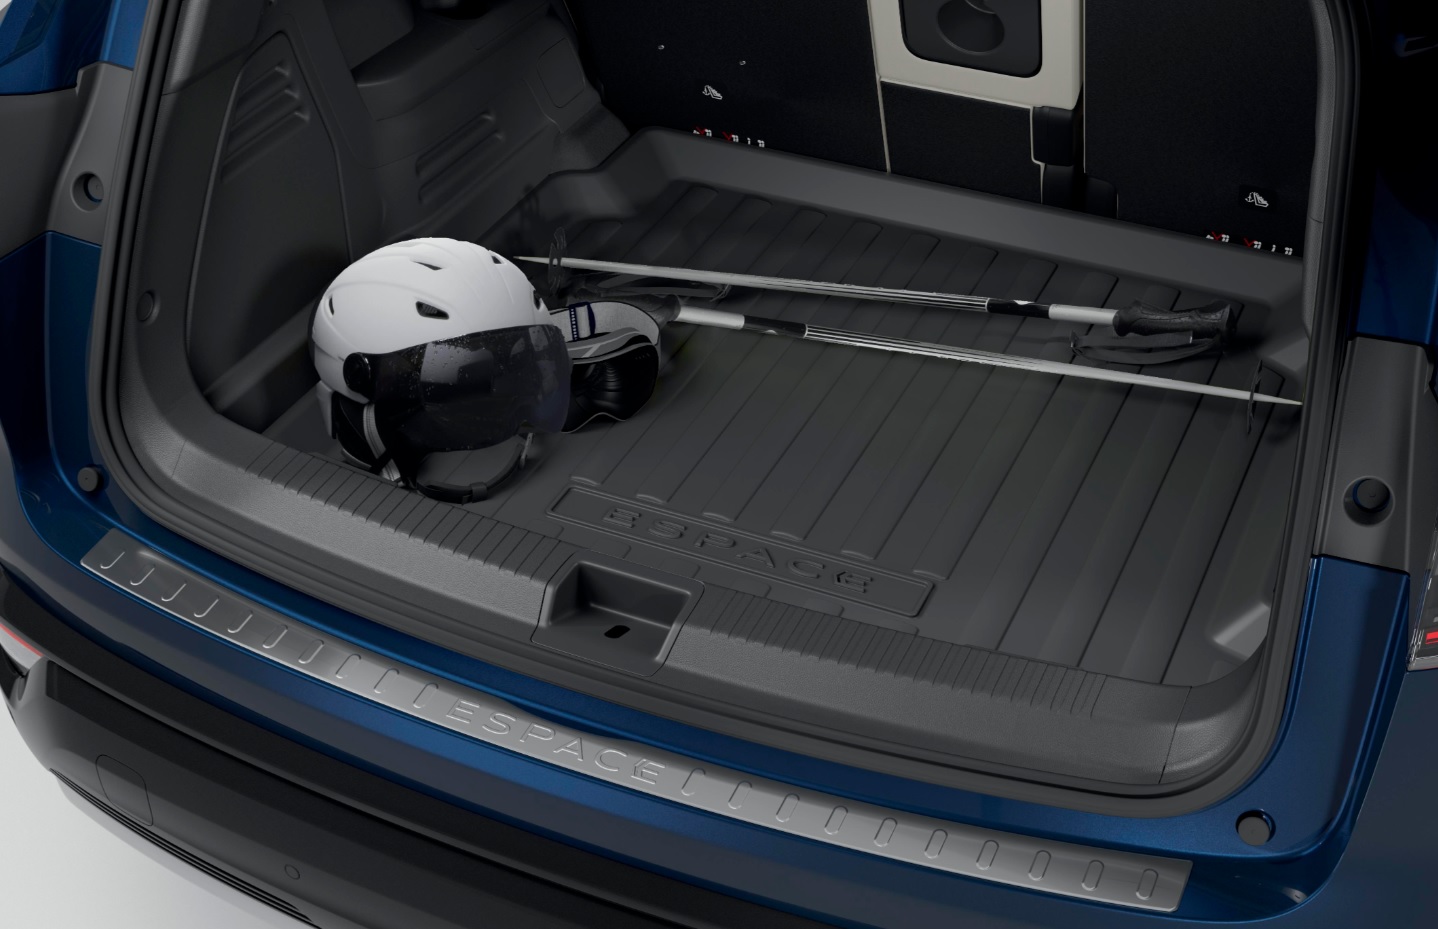 Kofferraumwanne mit Stoßstangenschutz für Renault Austral/Austral